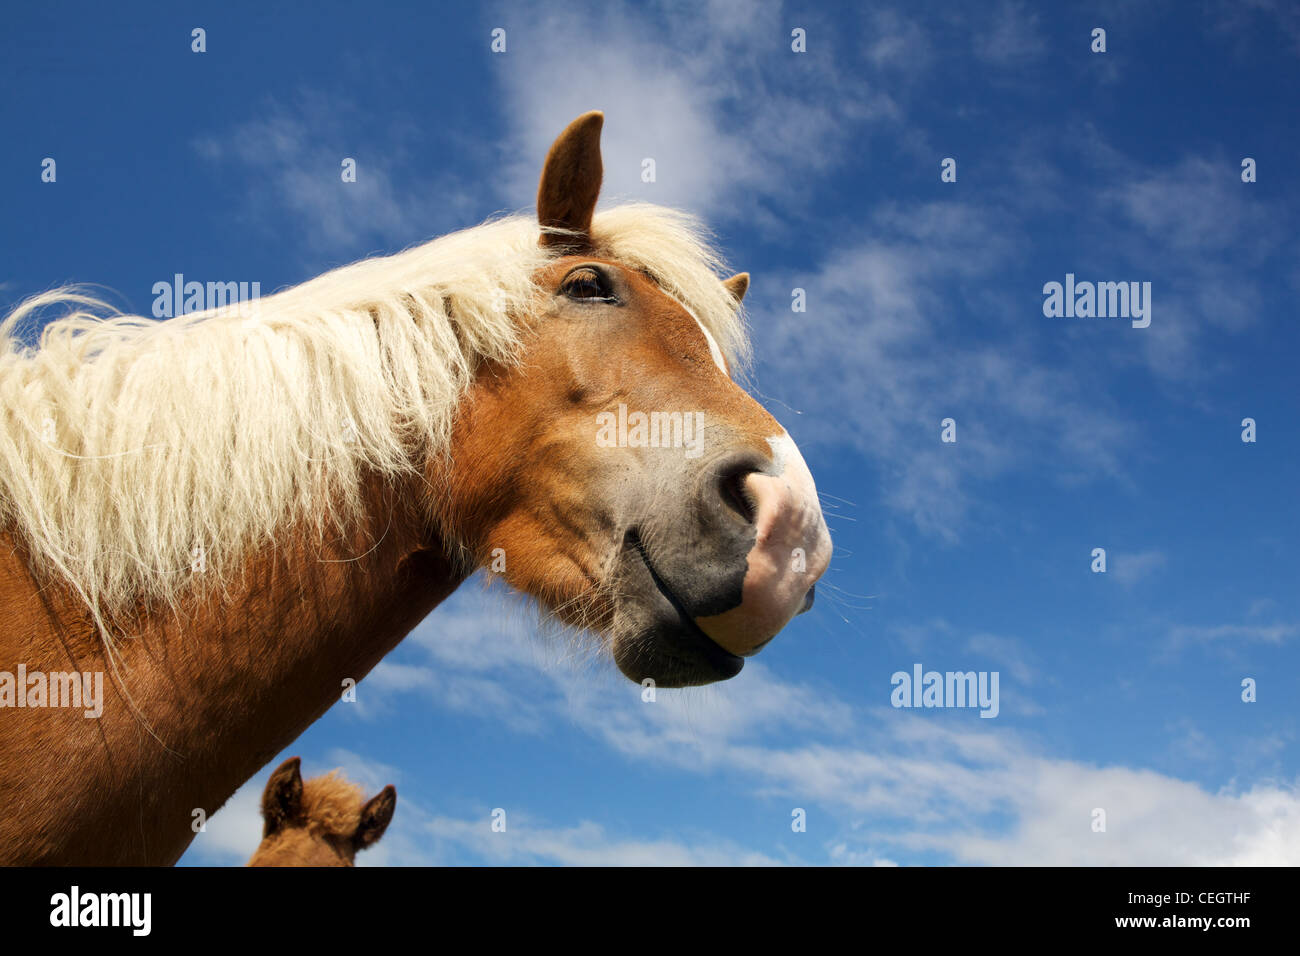 Icelandic horse, Iceland Stock Photo